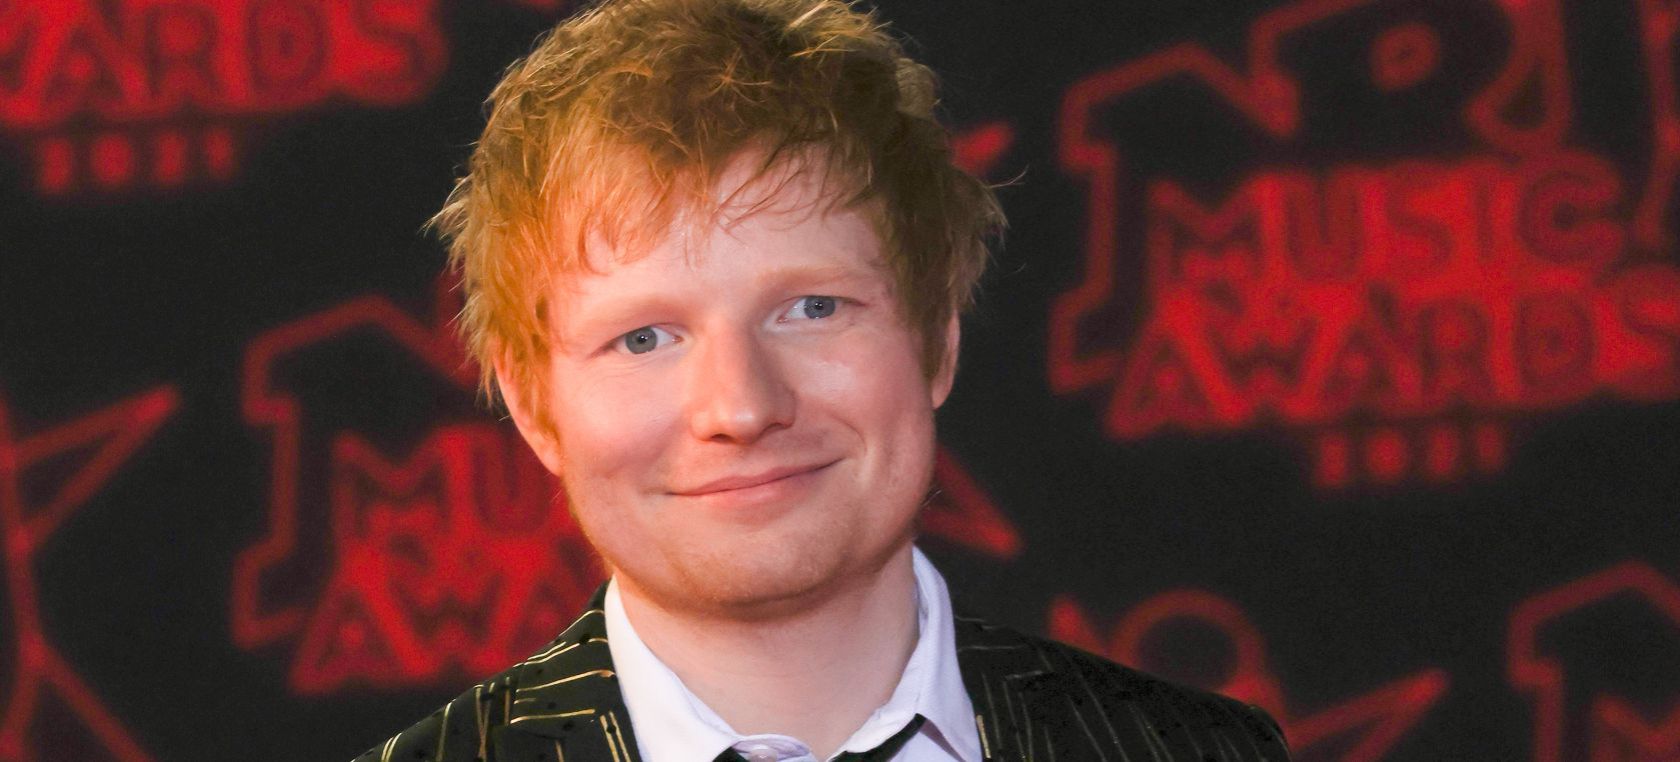 Ed Sheeran consigue 100M de seguidores en Spotify